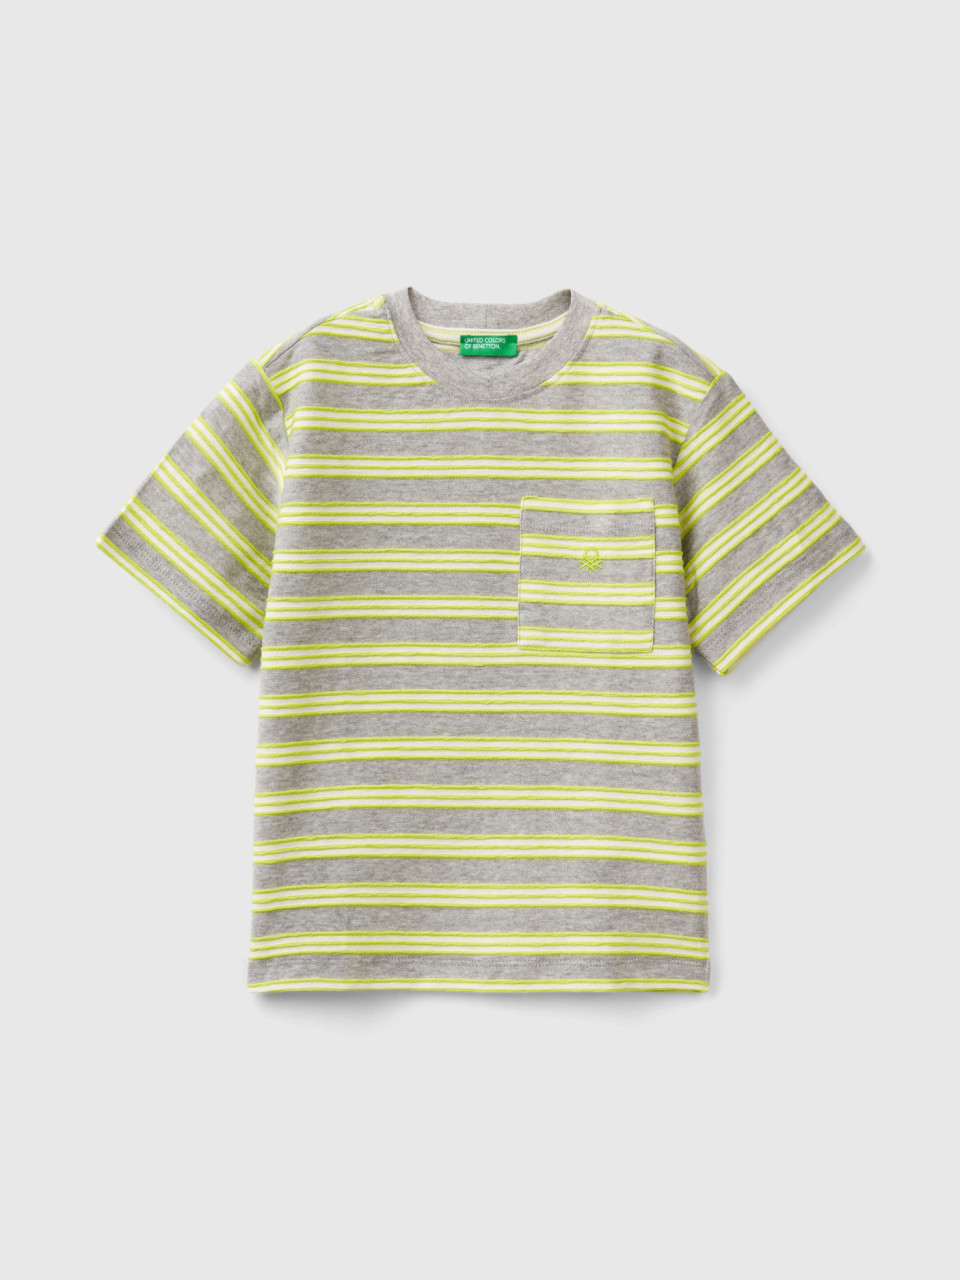 Benetton, Gestreiftes T-shirt Mit Täschchen, Gelbgrün, male